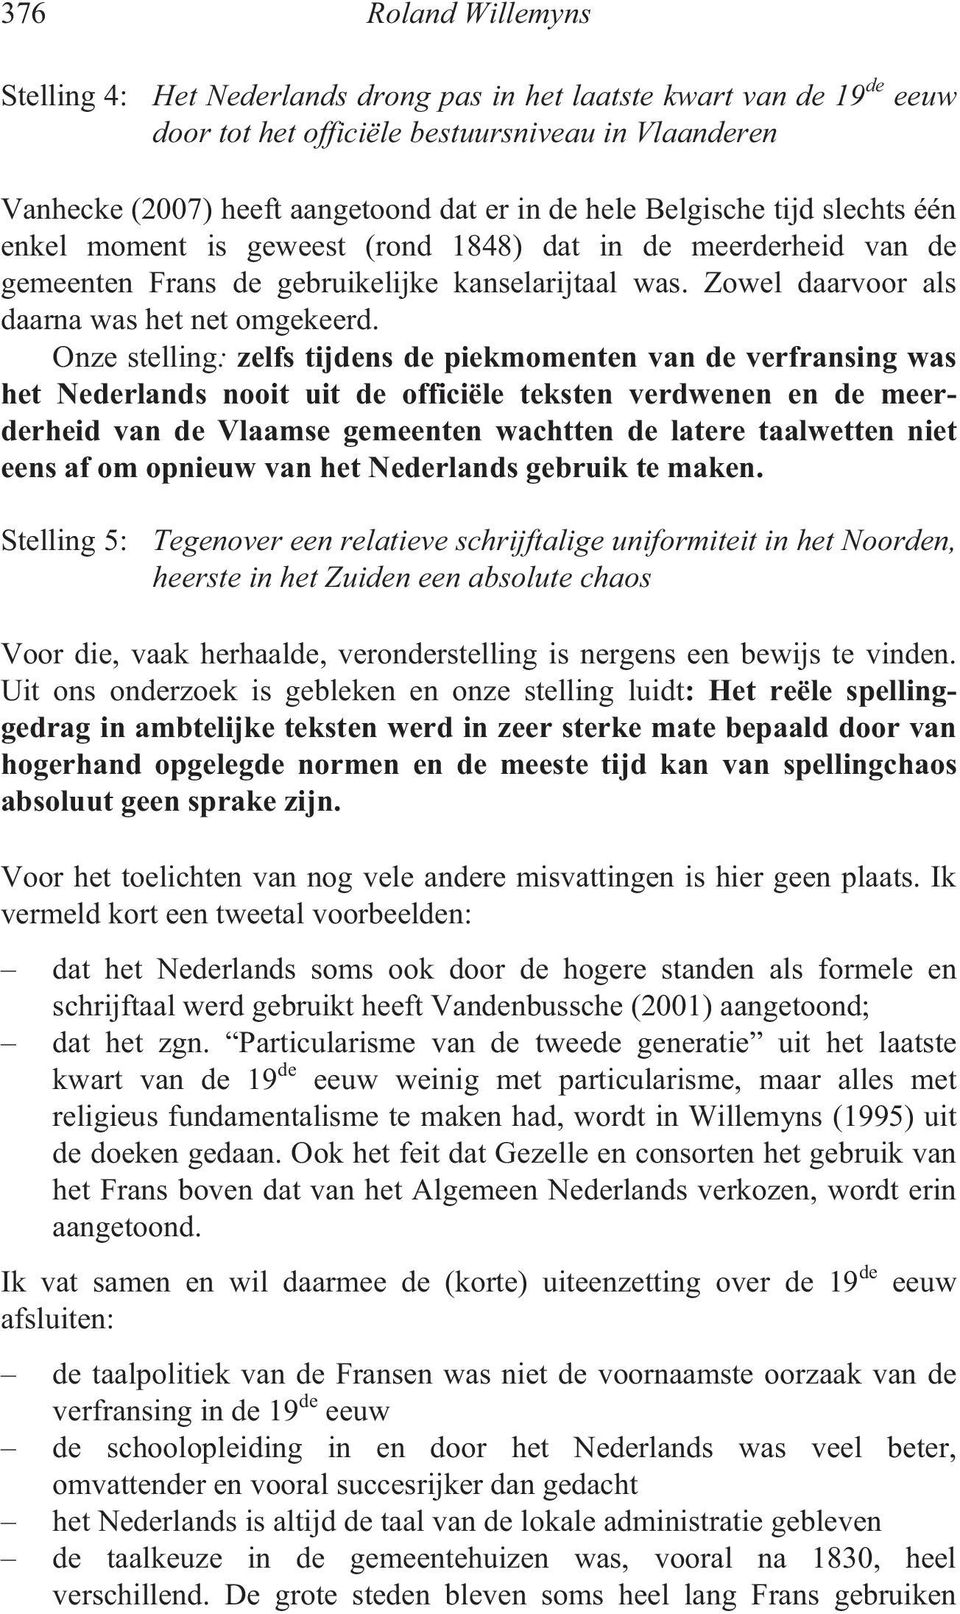 Onze stelling: zelfs tijdens de piekmomenten van de verfransing was het Nederlands nooit uit de officiële teksten verdwenen en de meerderheid van de Vlaamse gemeenten wachtten de latere taalwetten